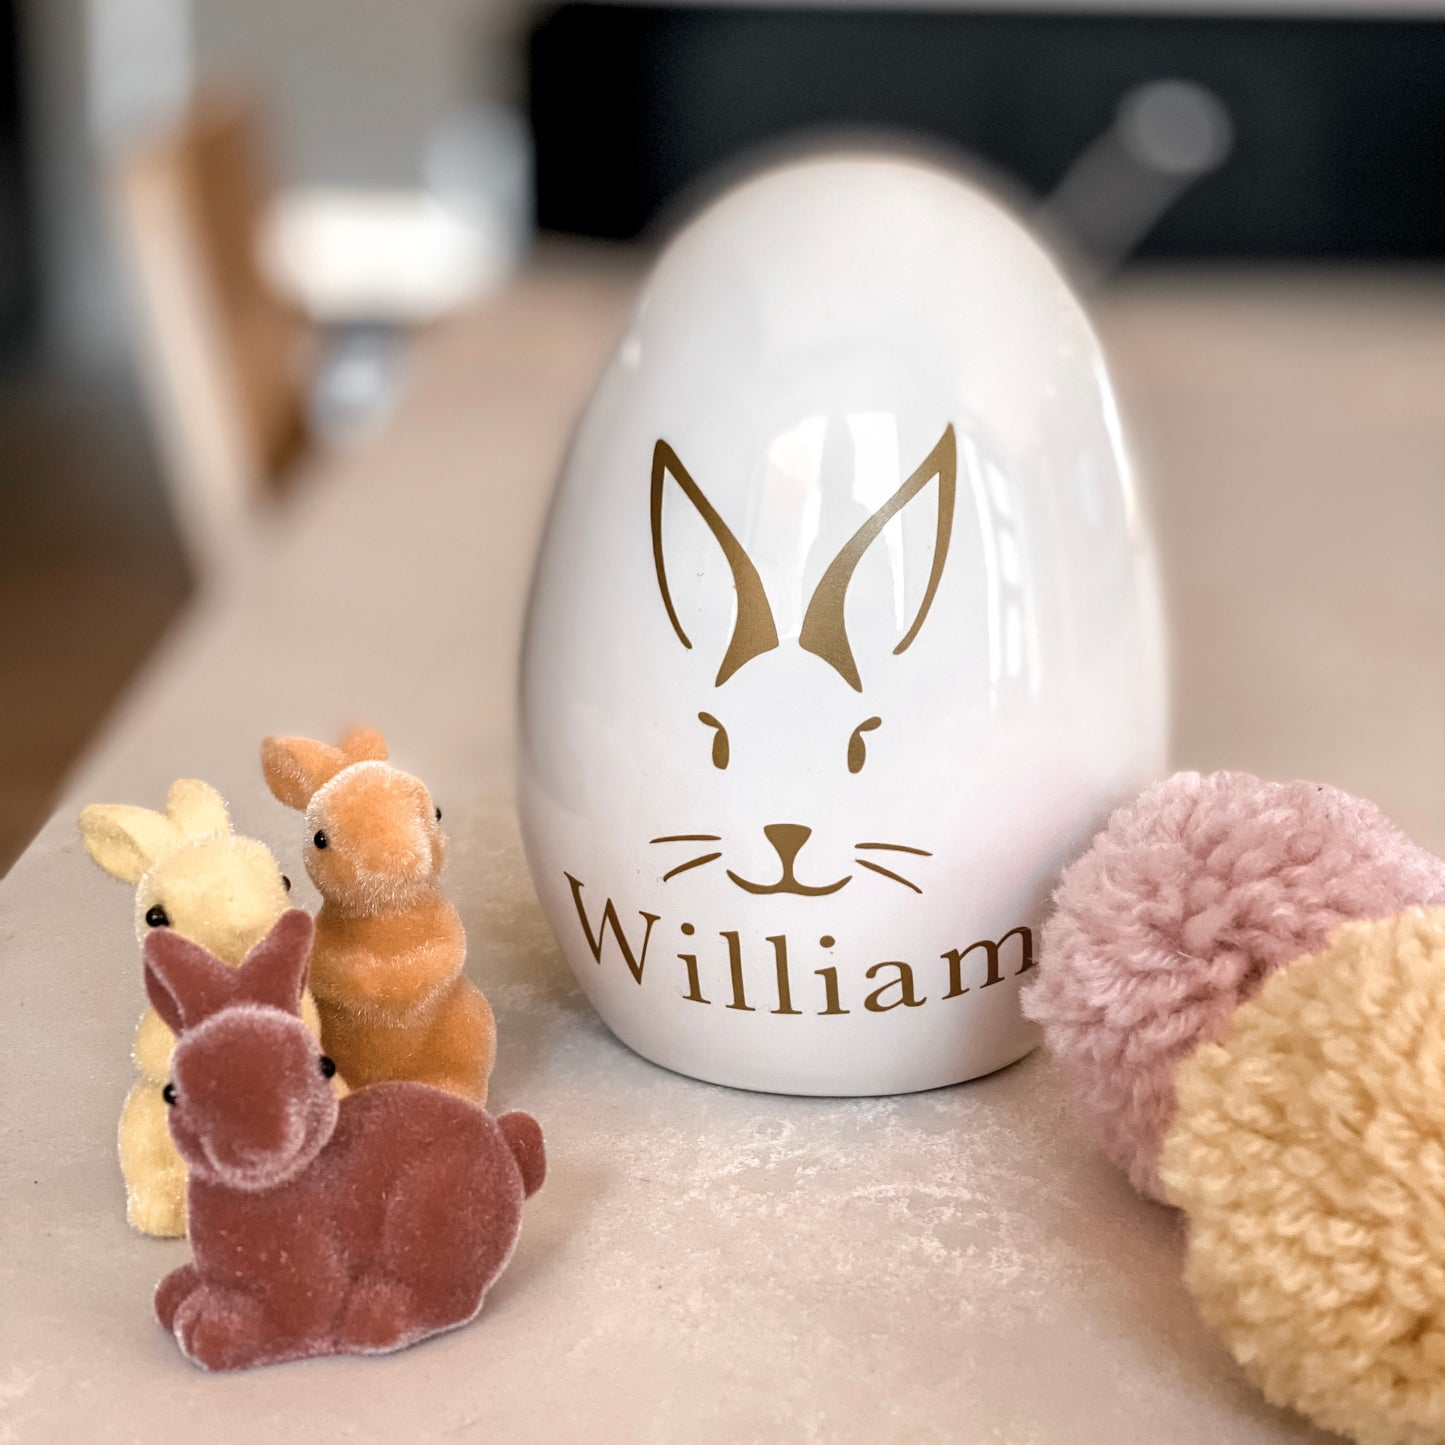 The Ceramic Easter Egg